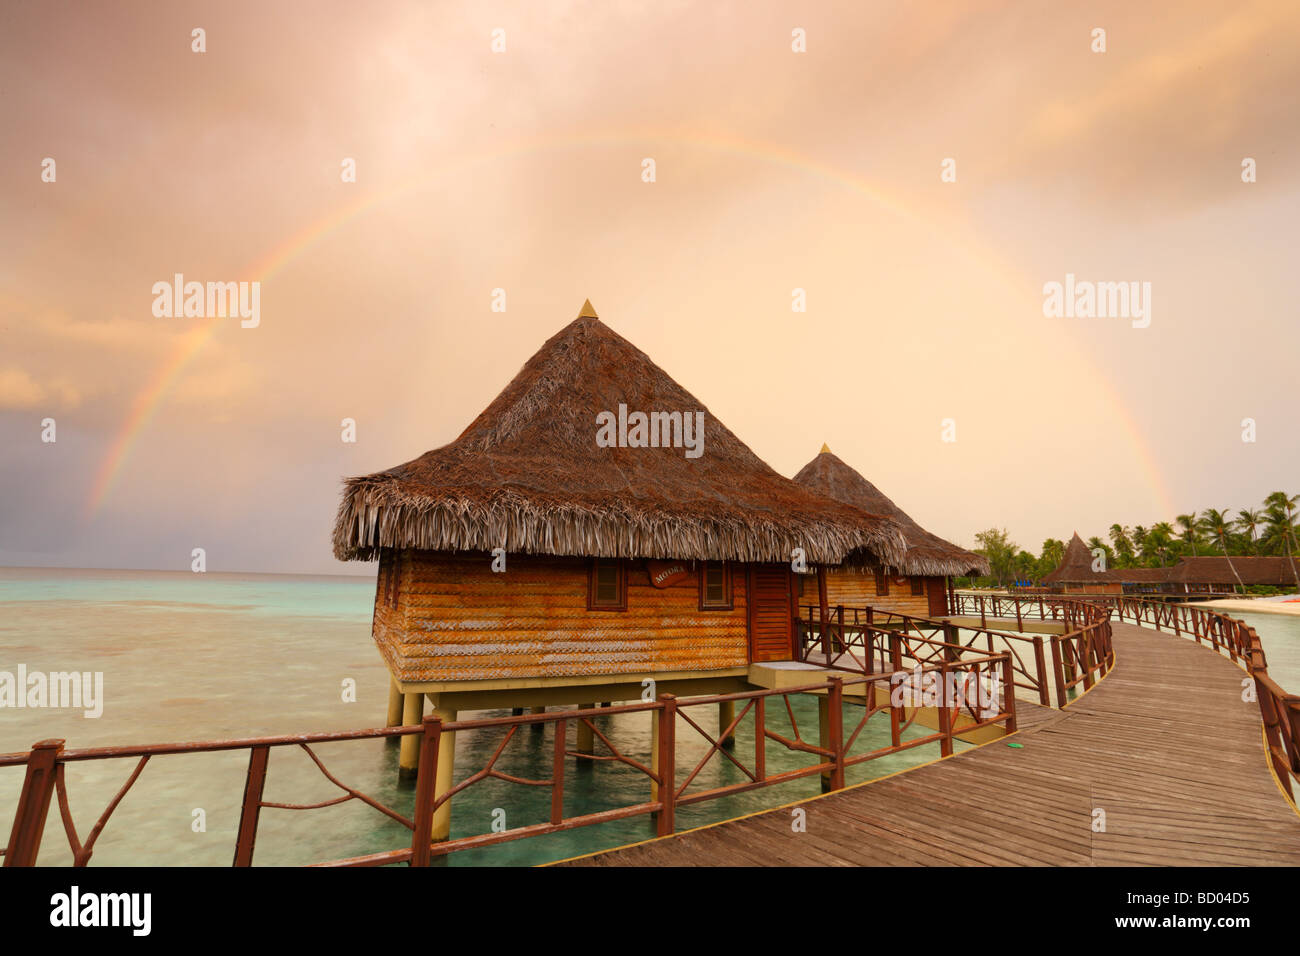 Sonnenaufgang und Regenbogen über Kia Ora Resort, Rangiroa, Tuamotu-Archipel, Französisch-Polynesien Stockfoto